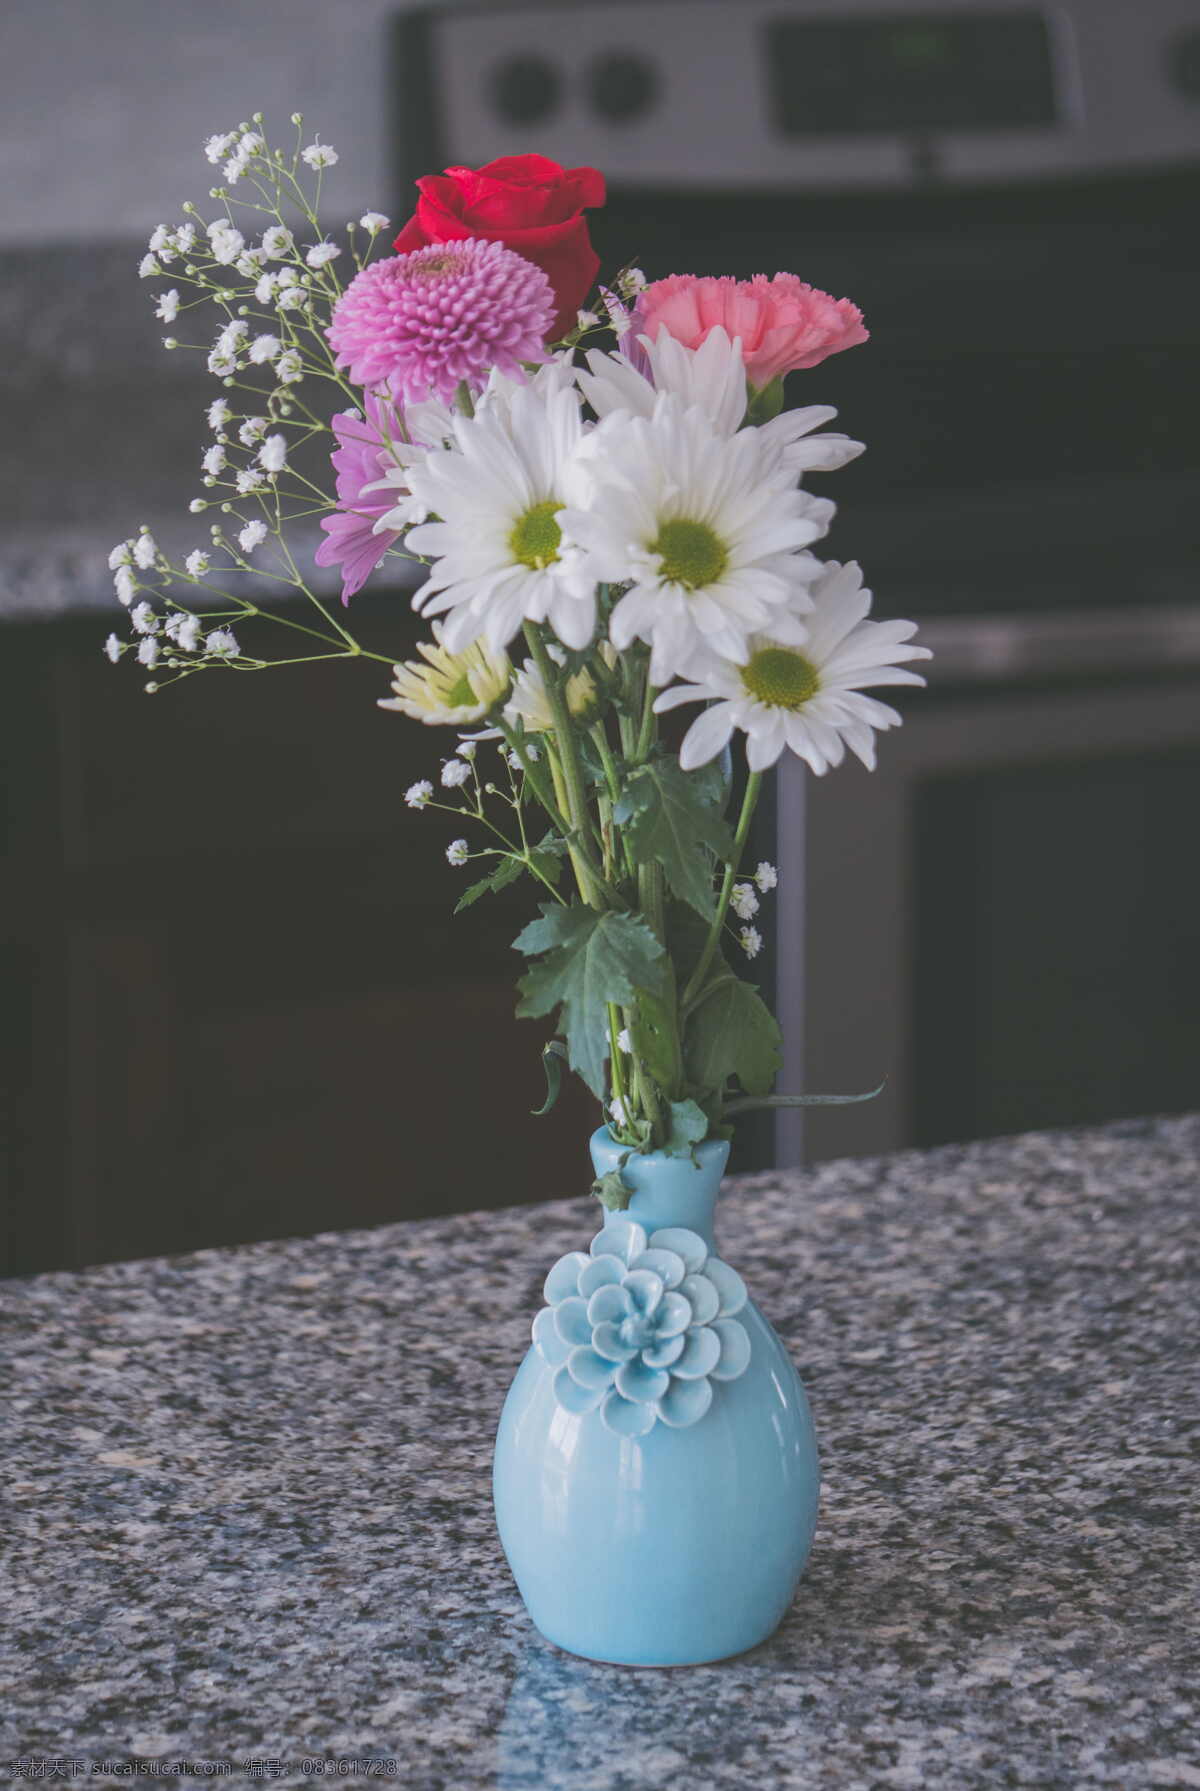 花瓶里的鲜花 插花艺术 花瓶 鲜花 花卉 花语 花艺 花朵 花瓣 花枝招展 花之物语 生物世界 花草